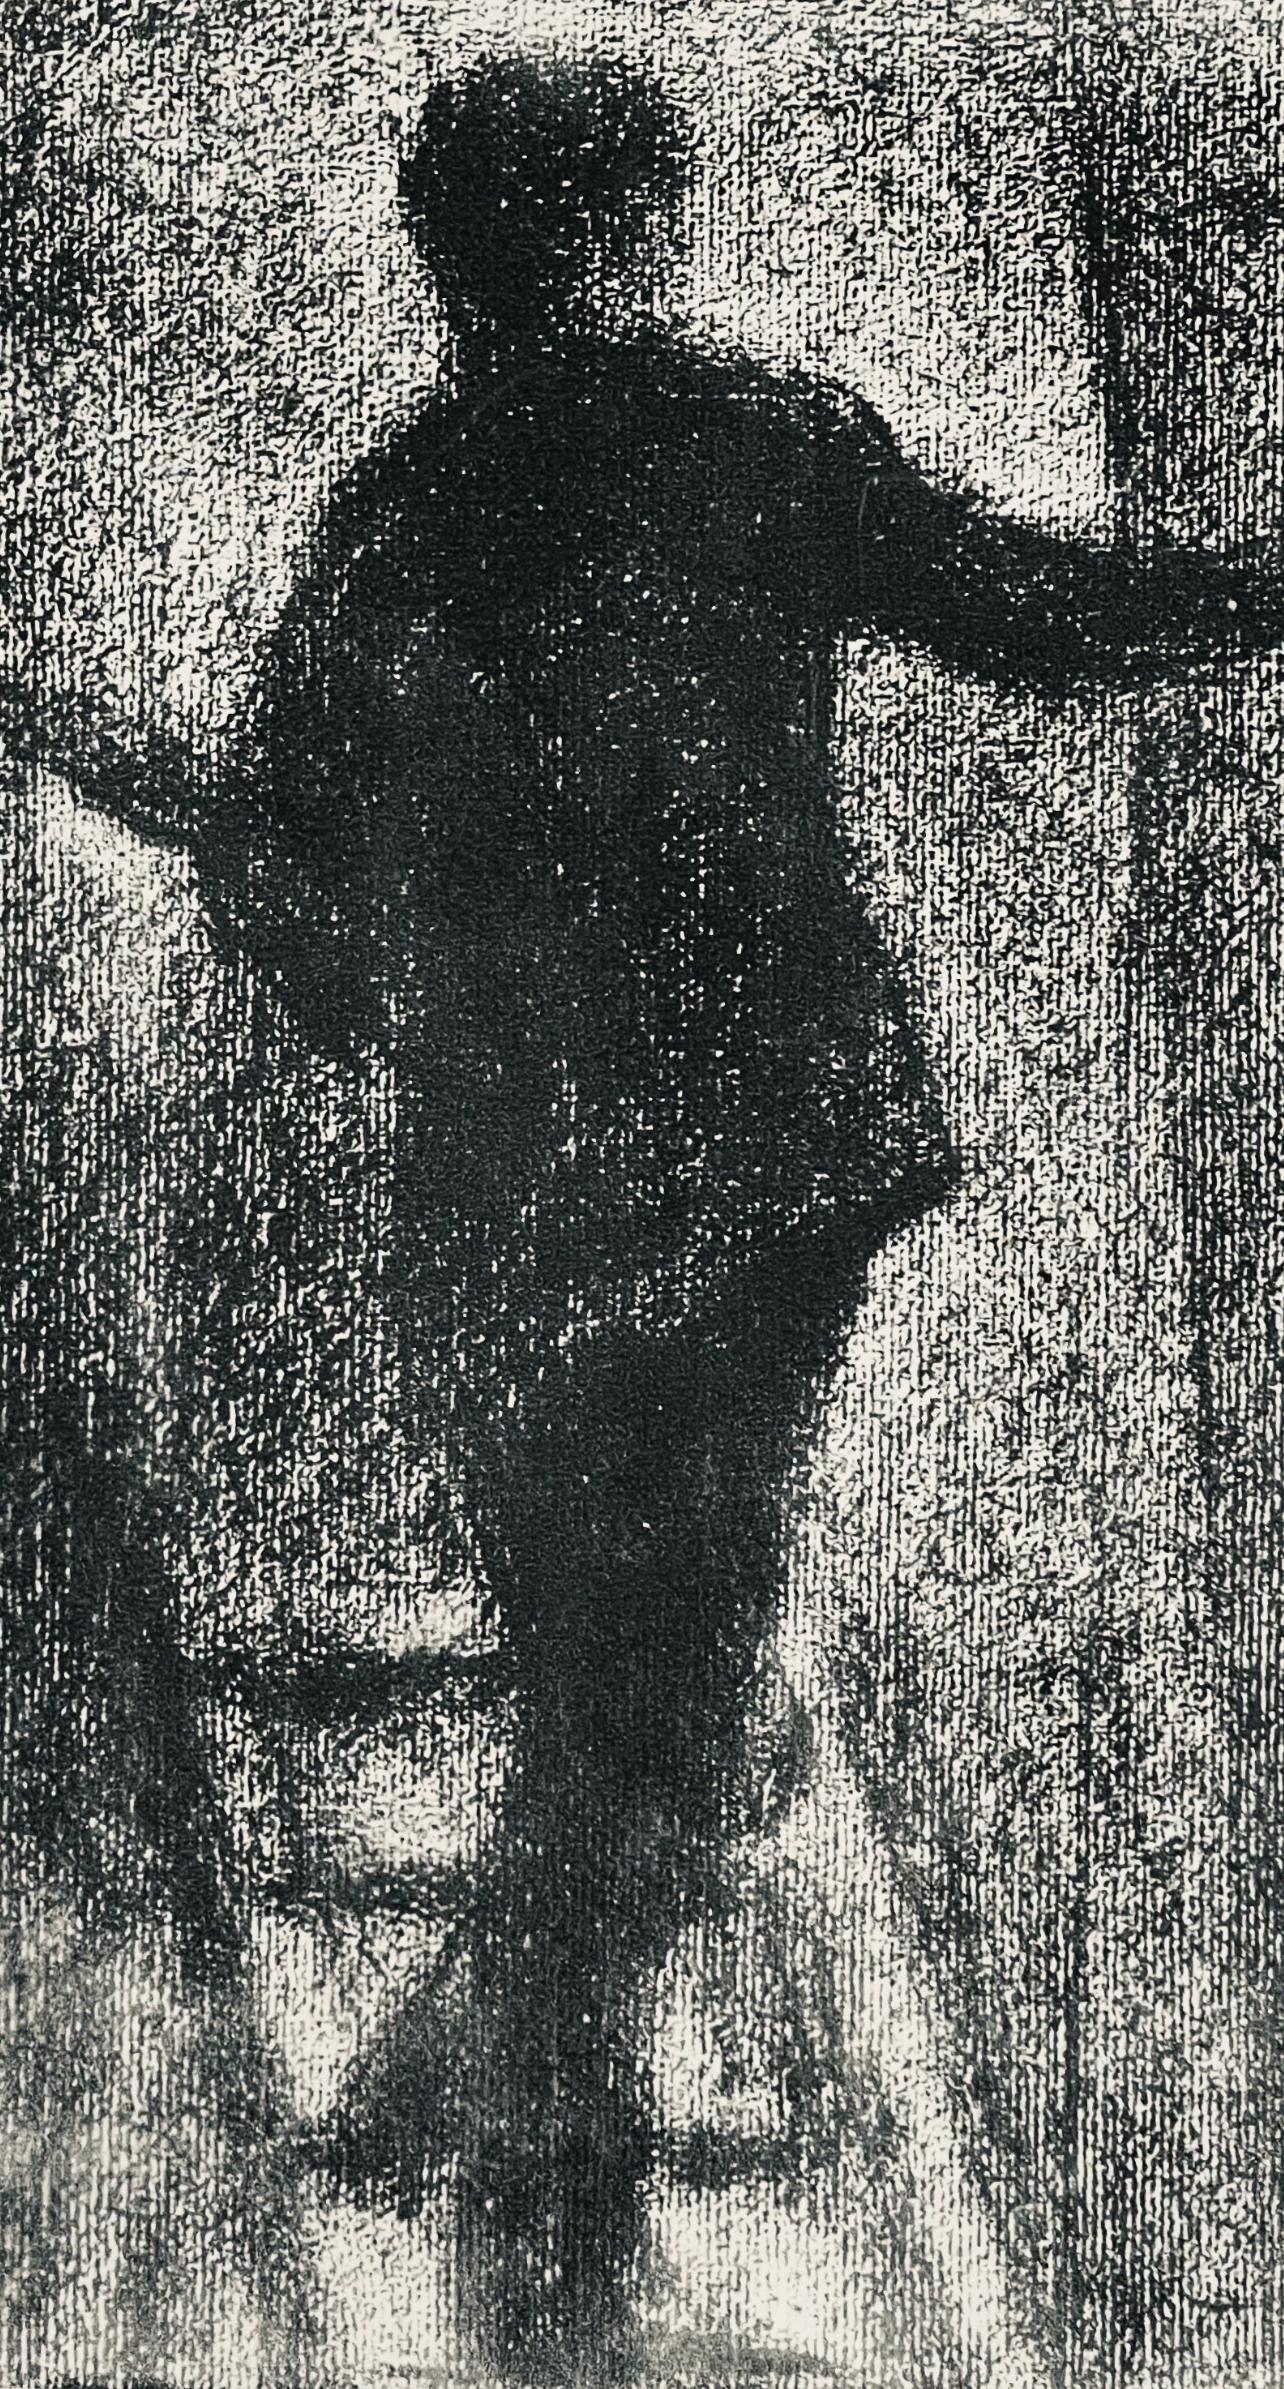 Seurat, Le peintre au travail, Seurat (after) - Print by Georges Seurat